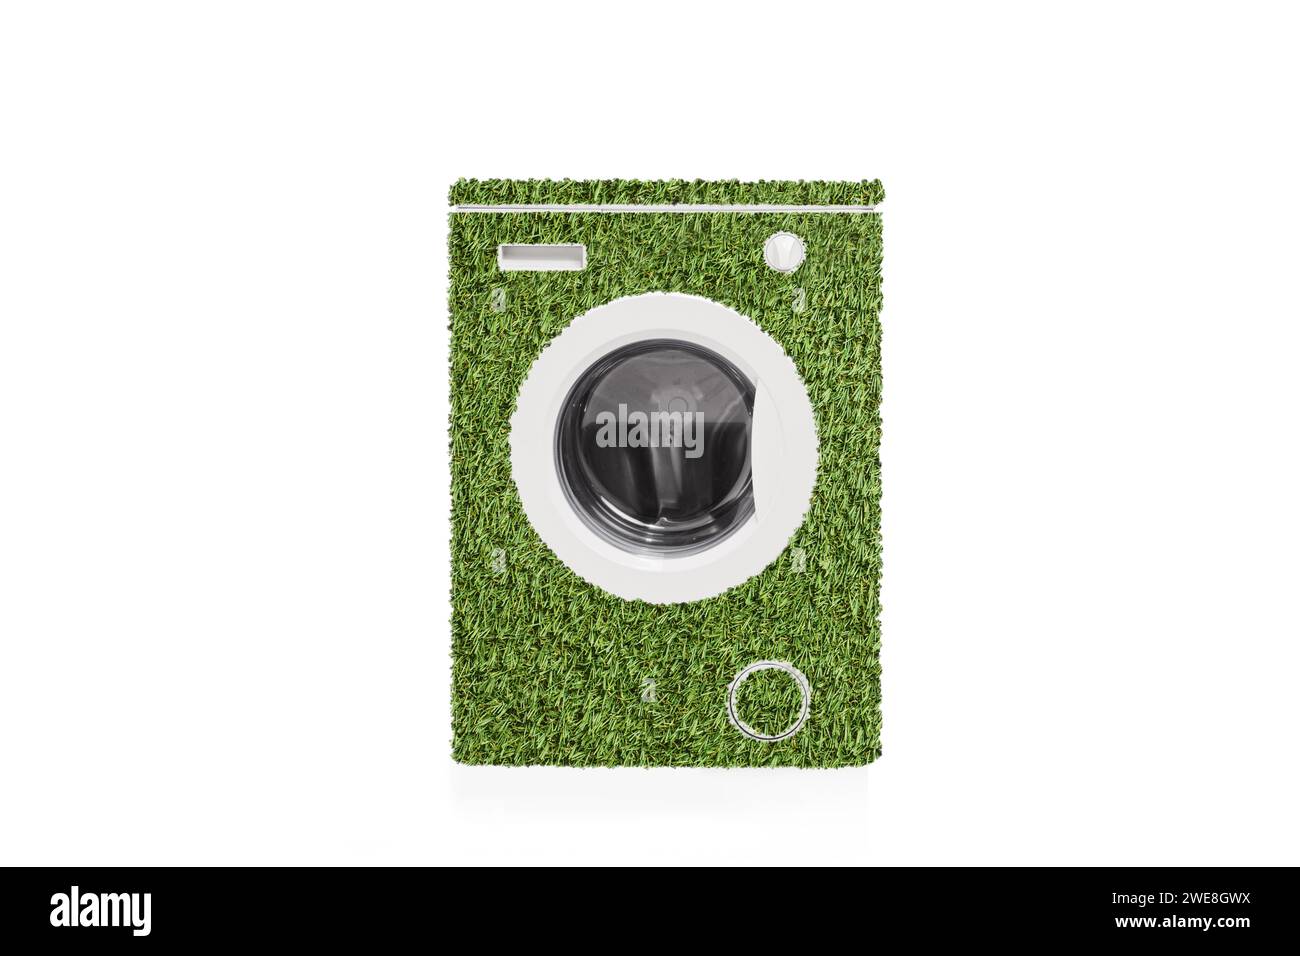 Lavatrice verde a risparmio energetico isolata su sfondo bianco Foto Stock